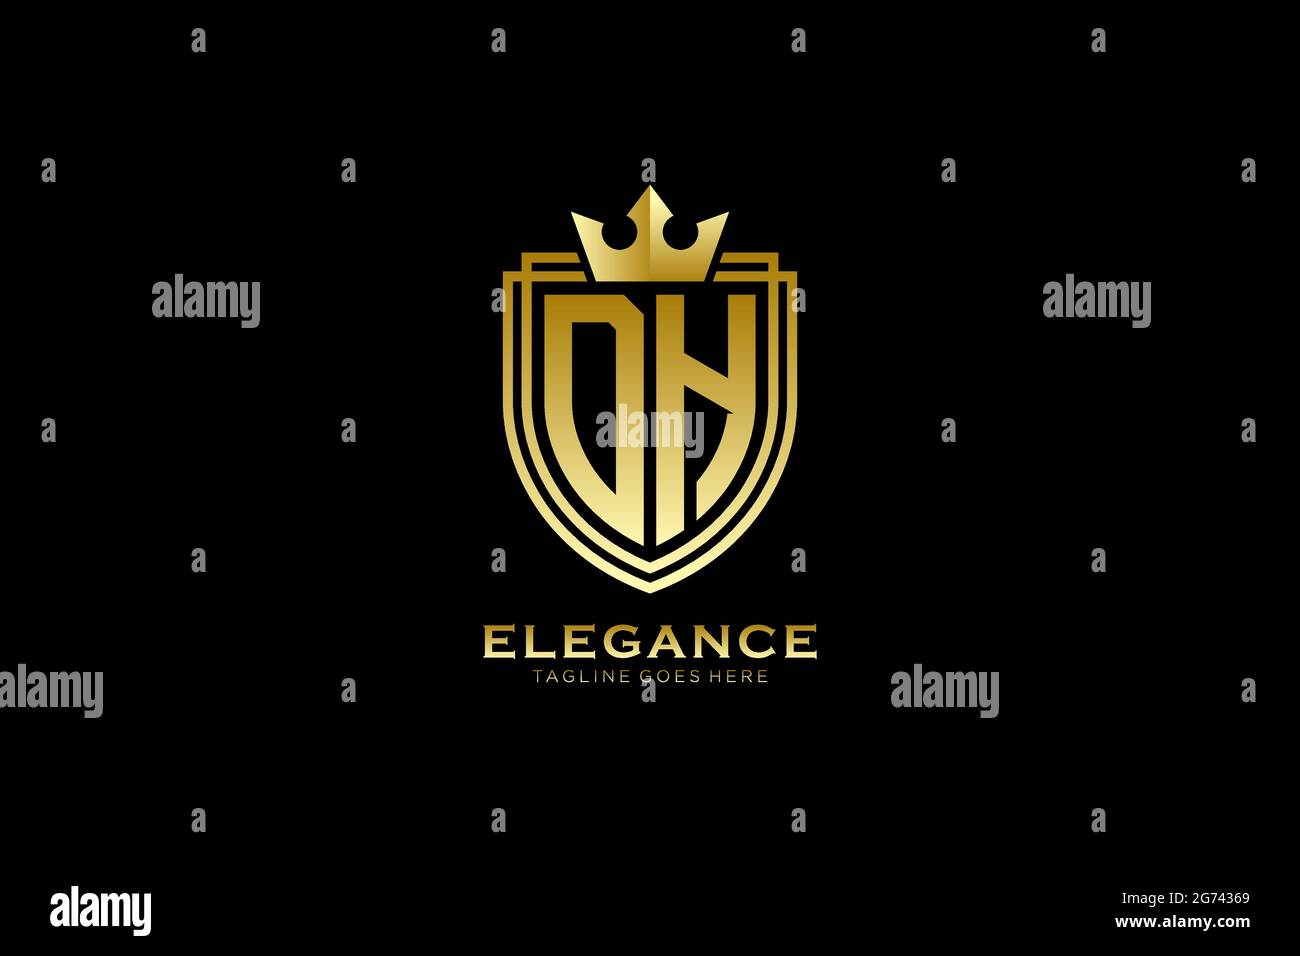 Dh Elegantes Luxus-Monogramm-Logo oder Badge-Vorlage mit Rollen und königlicher Krone - perfekt für luxuriöse Branding-Projekte Stock Vektor